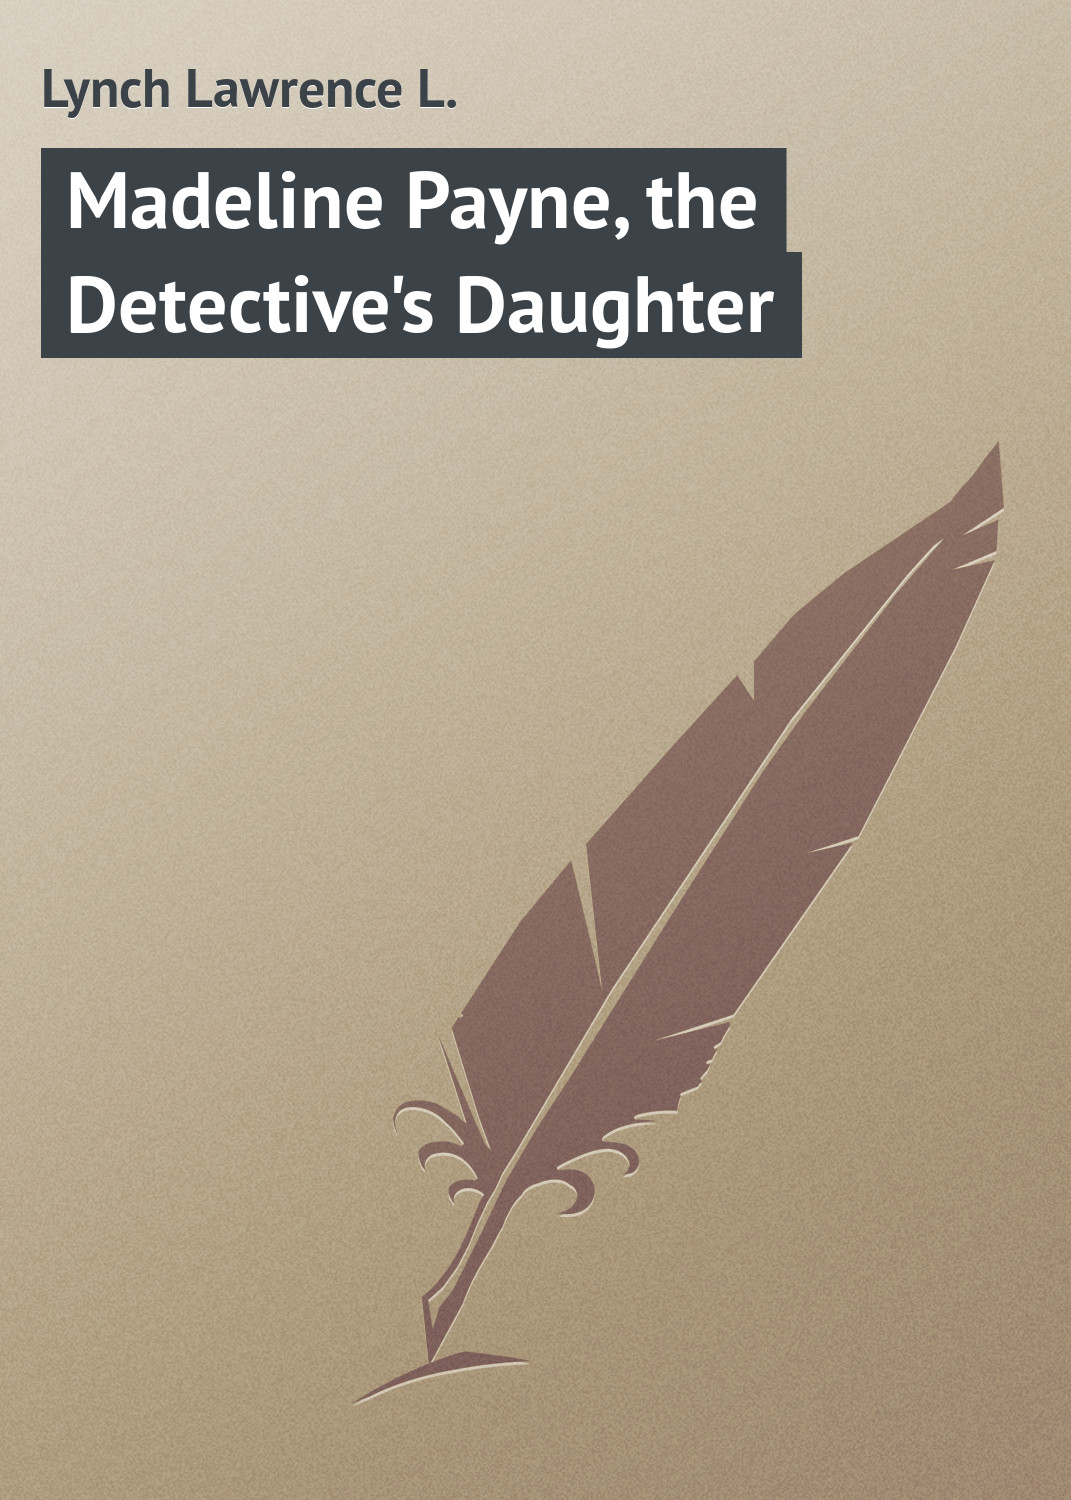 Книга Madeline Payne, the Detective's Daughter из серии , созданная Lawrence Lynch, может относится к жанру Зарубежная классика, Иностранные языки. Стоимость электронной книги Madeline Payne, the Detective's Daughter с идентификатором 23145395 составляет 5.99 руб.